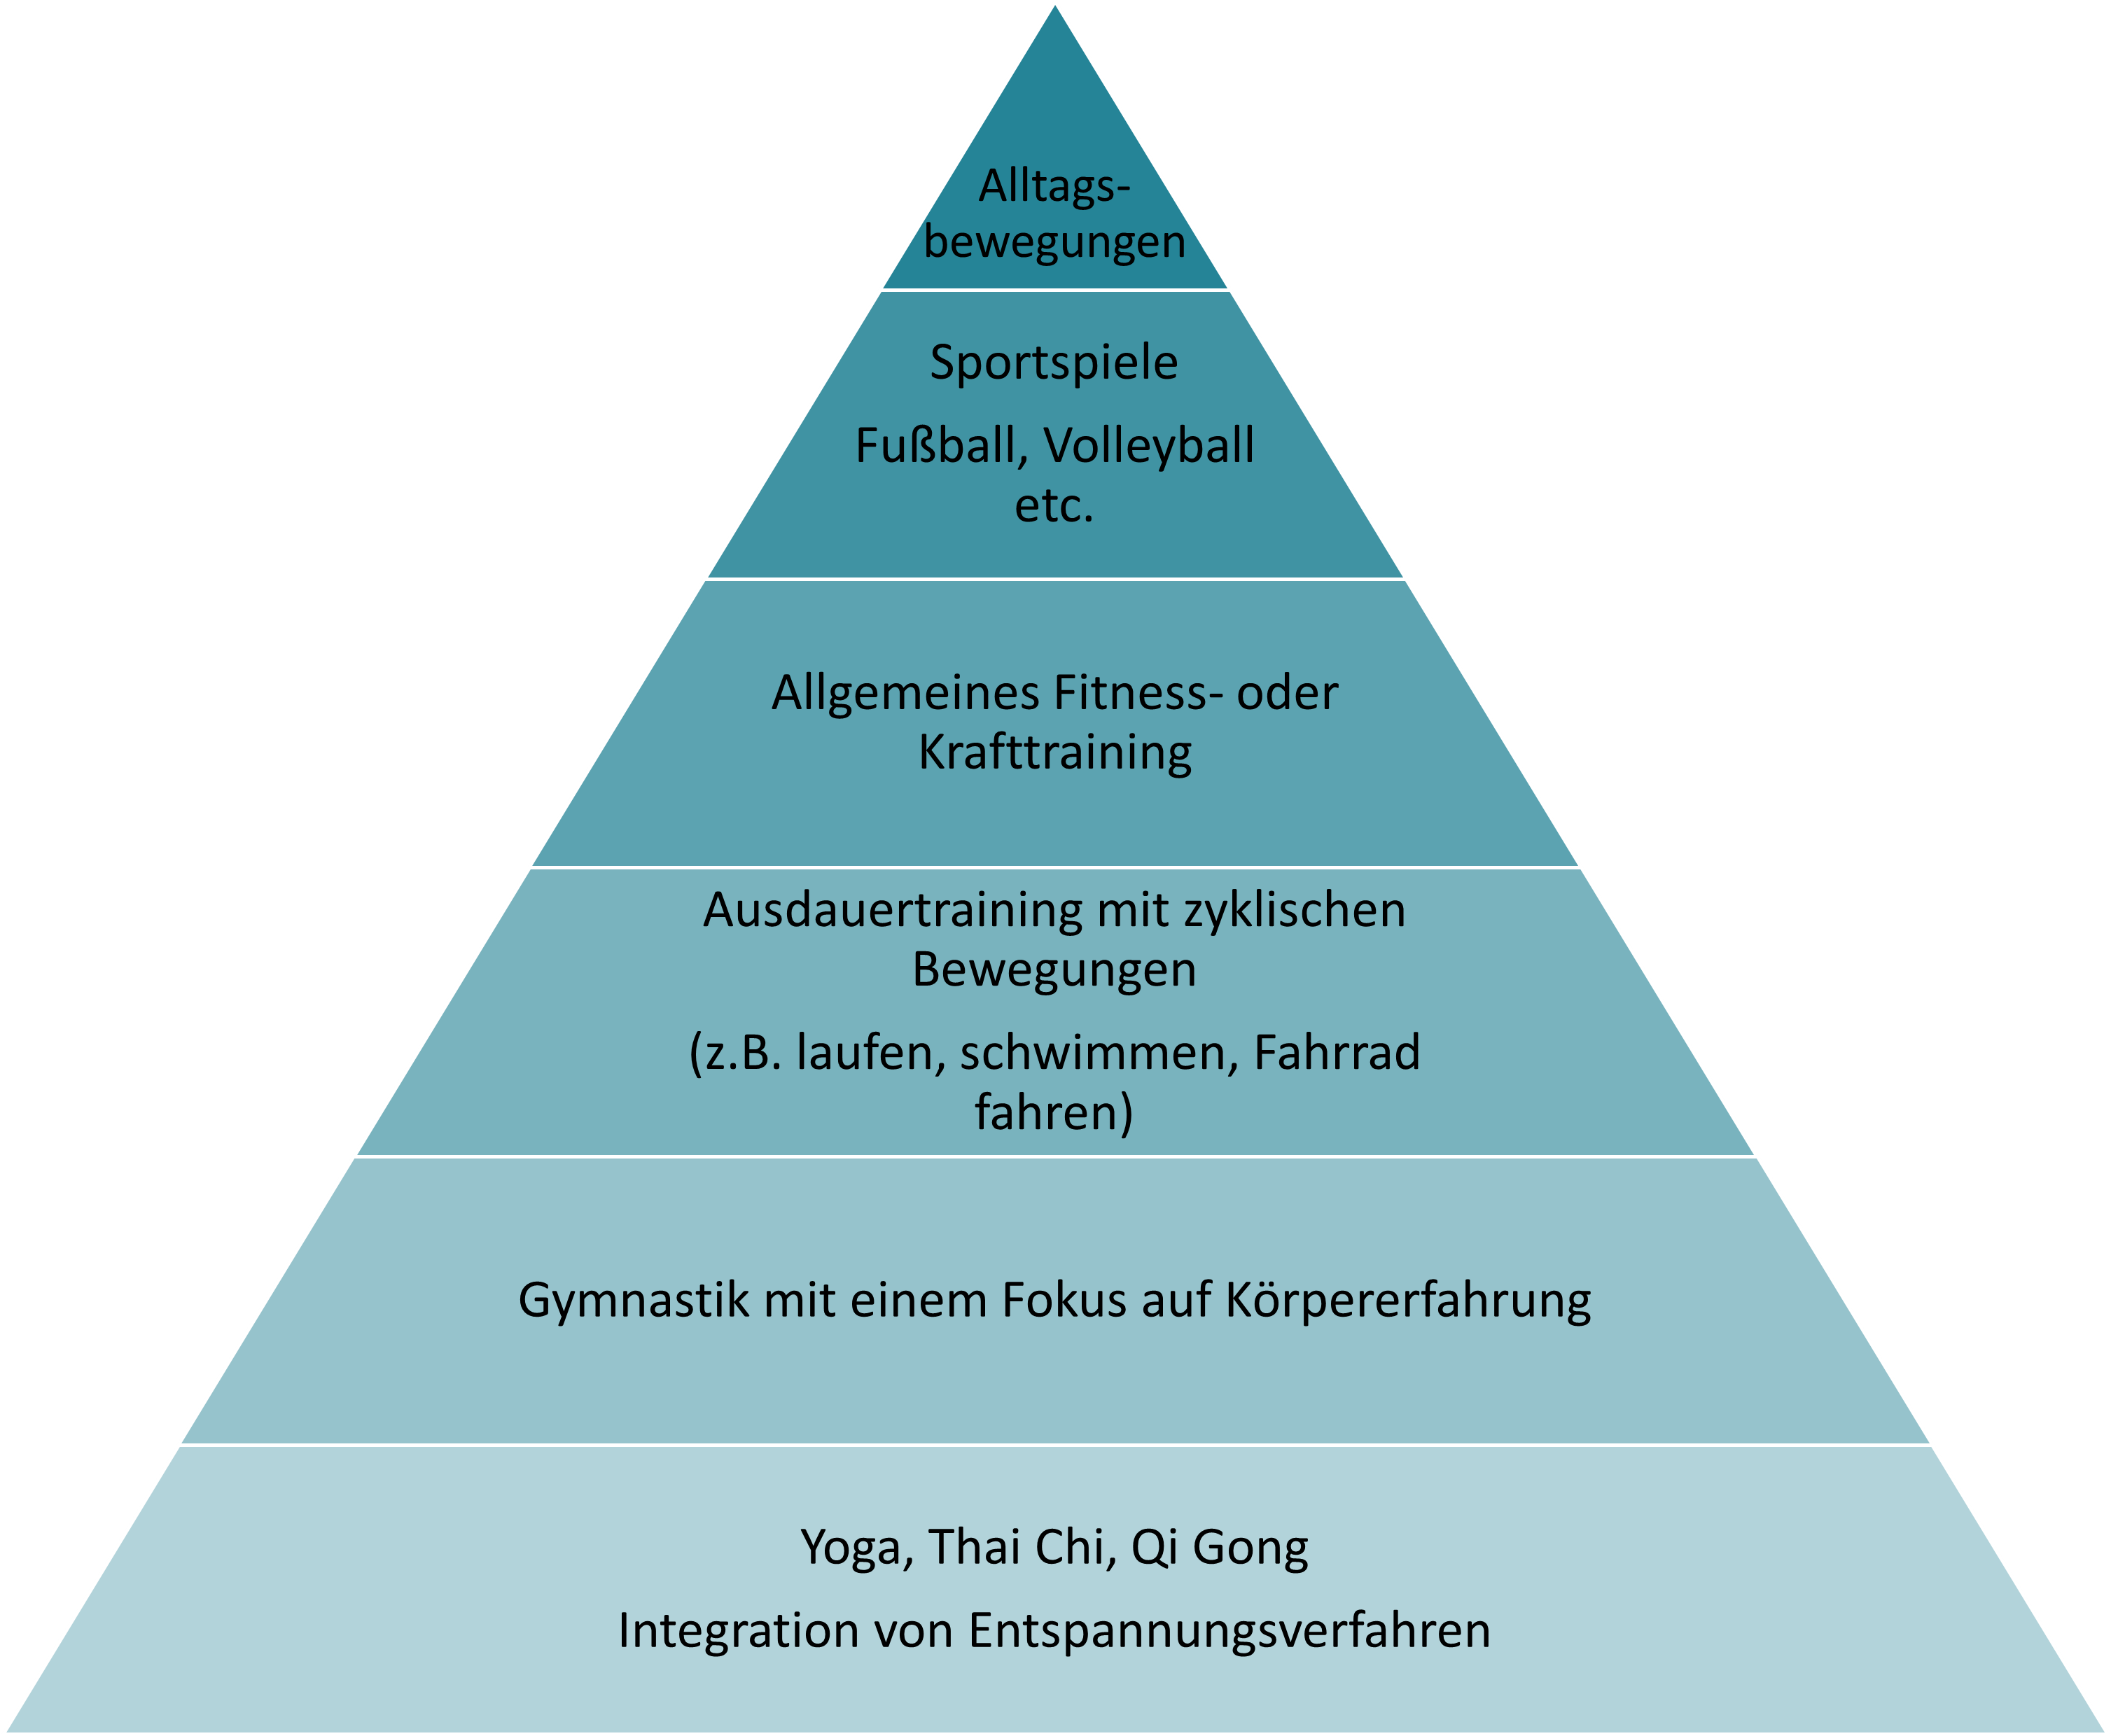 Pyramide mit unterschiedlichen sportlichen Betätigungen von Alltagsbewegungen (Spitze) über Sportspiele, Sport mit zyklischen Bewegungen bis zu Yoga Thai Chi (ganz unten). Je weiter unten, desto besser sind die Tätigkeiten mit Achtsamkeit zu verbinden.